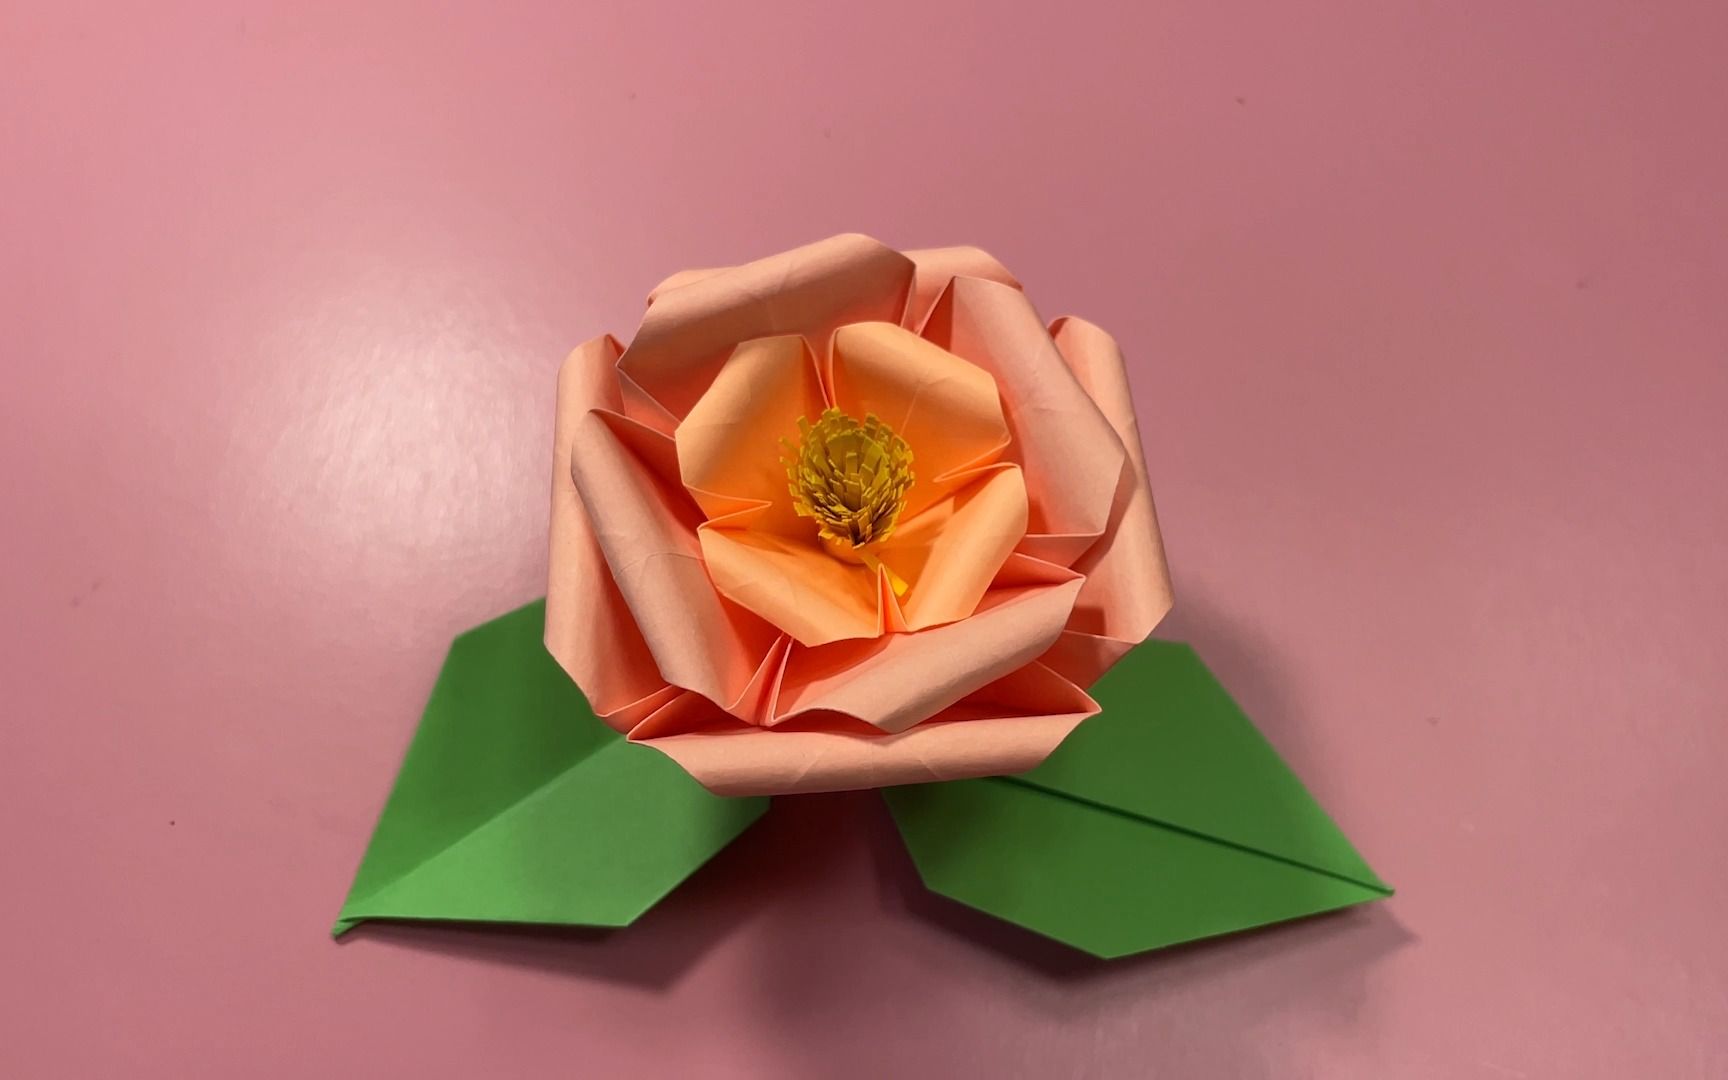 创意折纸教程,漂亮又简单的山茶花折纸方法,有手就行!